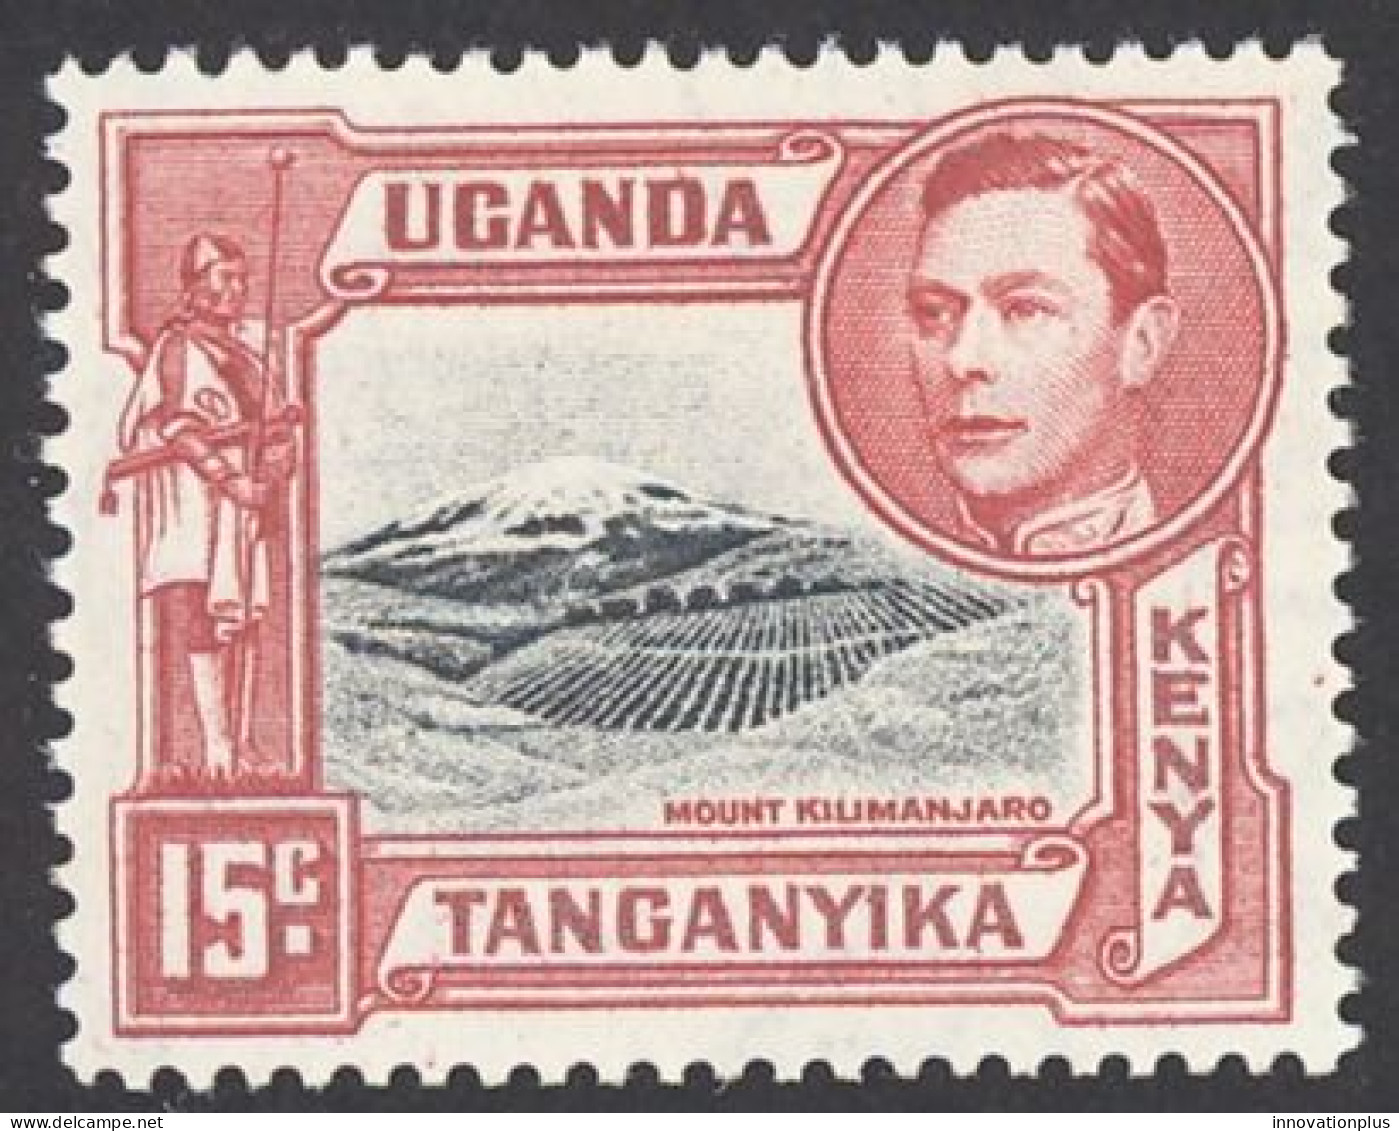 Kenya, Uganda, Tanzania Sc# 72 MNH 1943 15c Carmine & Gray Black Definitives - Kenya, Oeganda & Tanzania